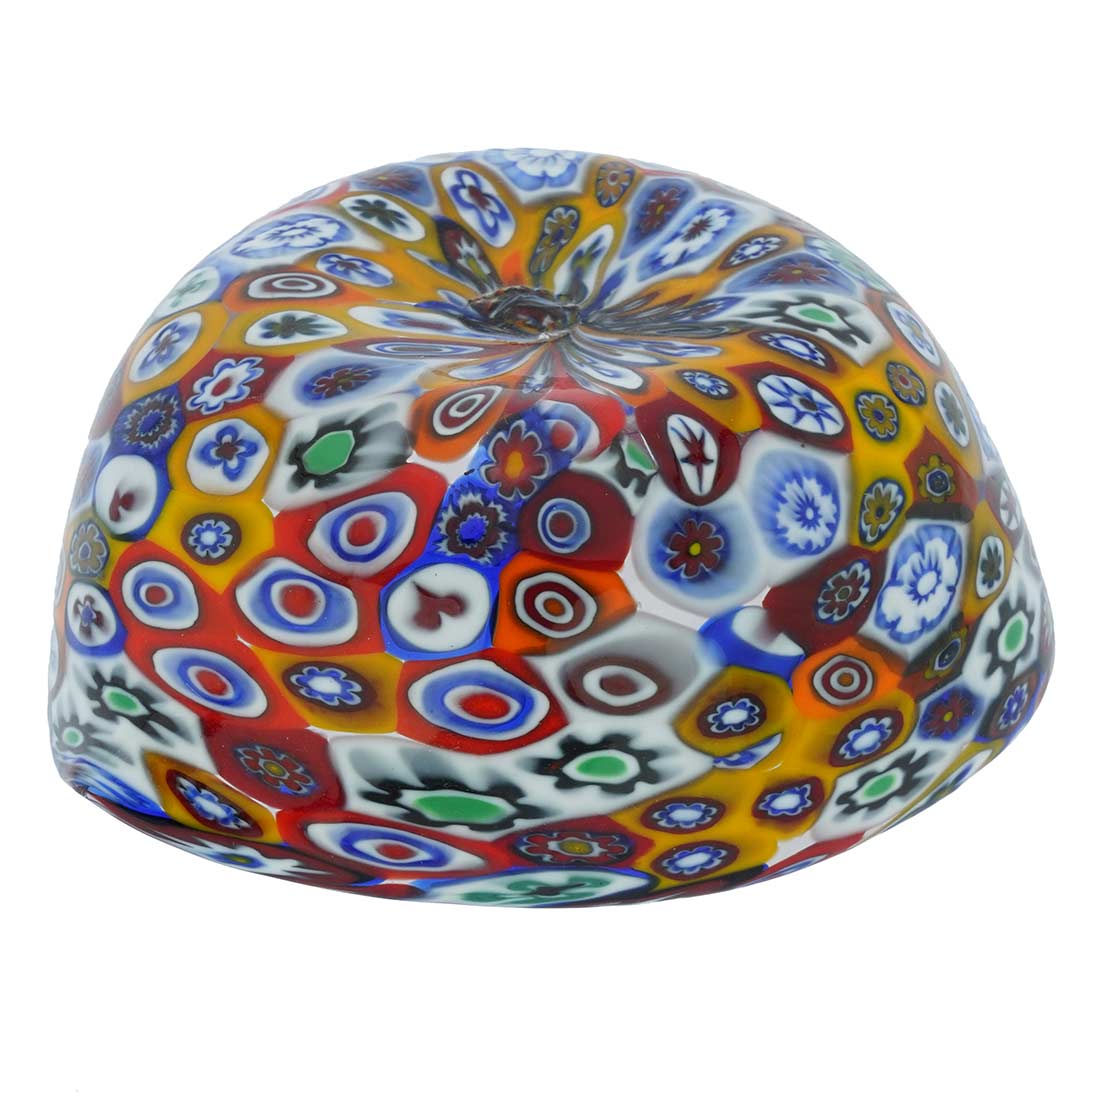 Murano Millefiori Decorative Heart Bowl - Multicolor